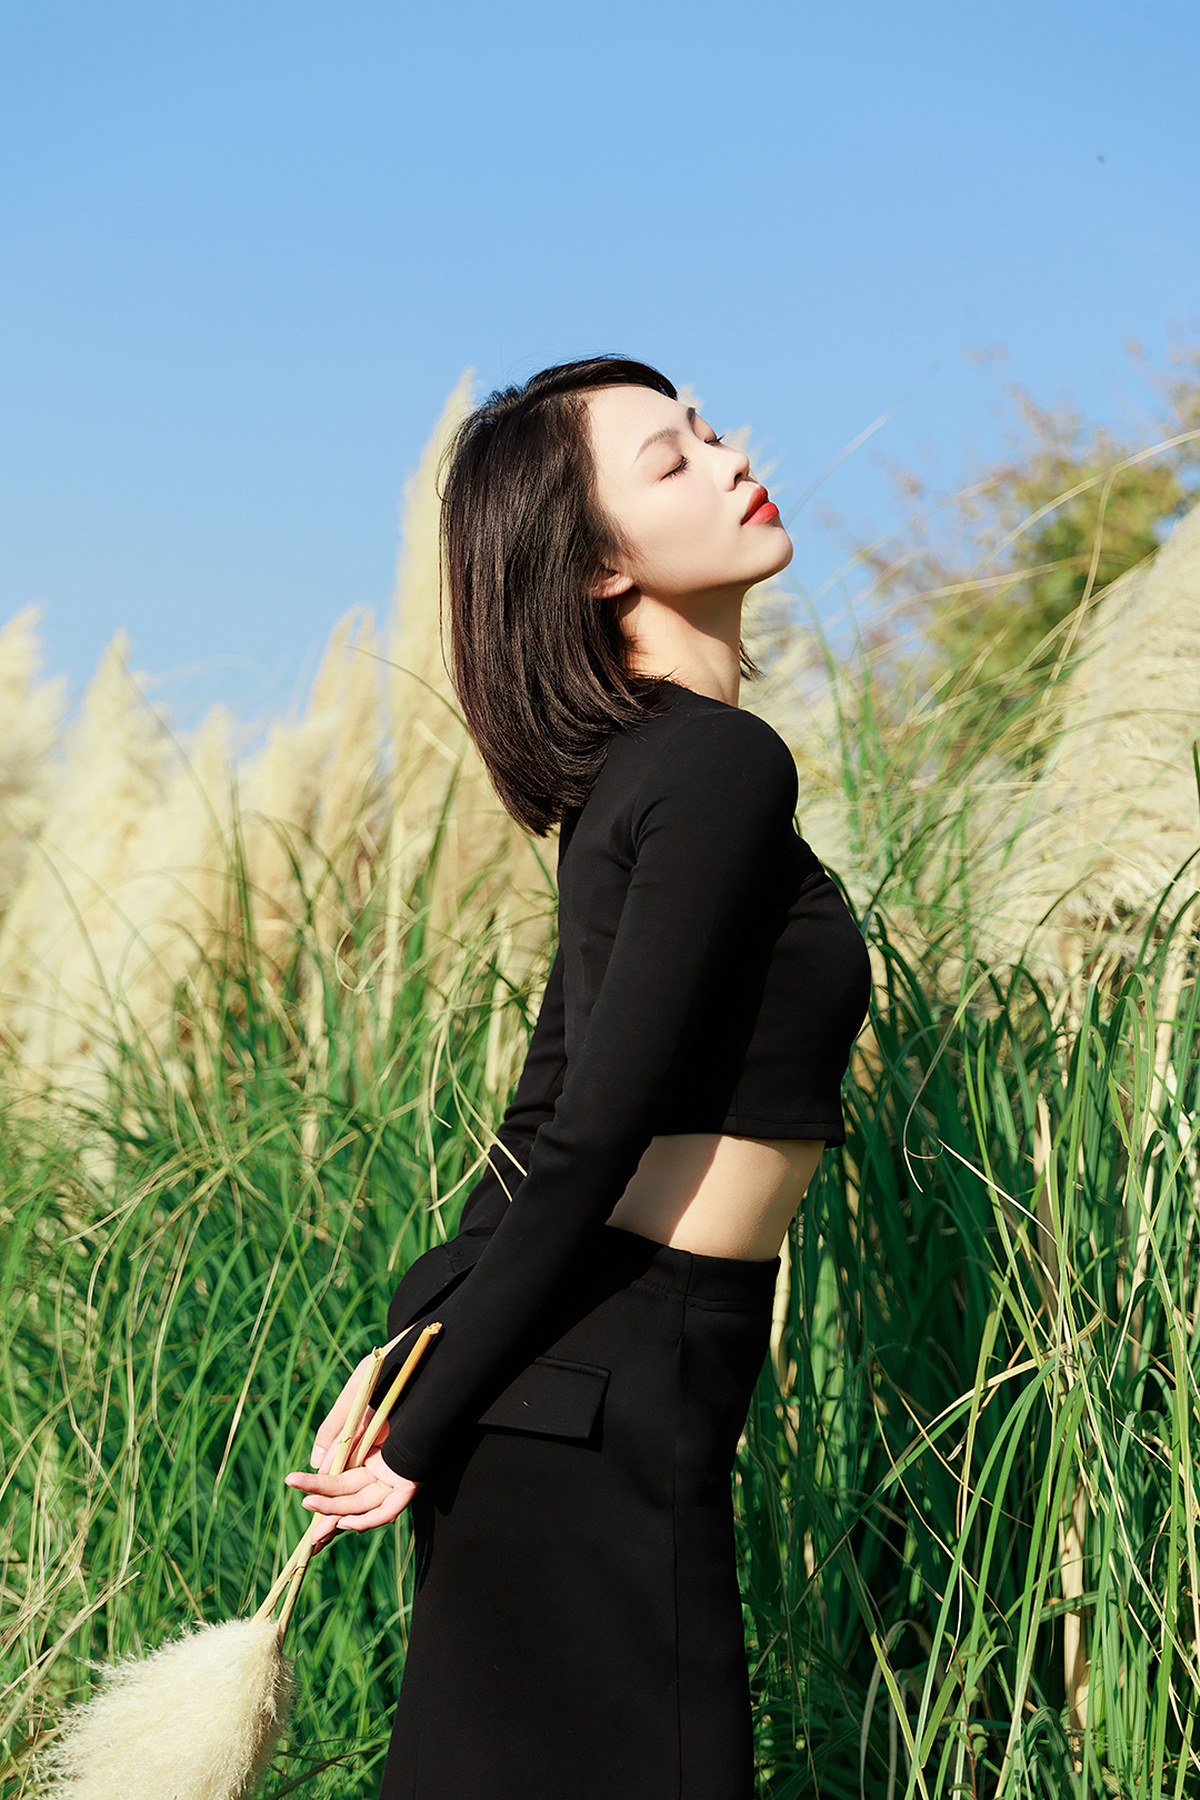 一位穿着黑色连衣裙的女子站在一片高草丛中